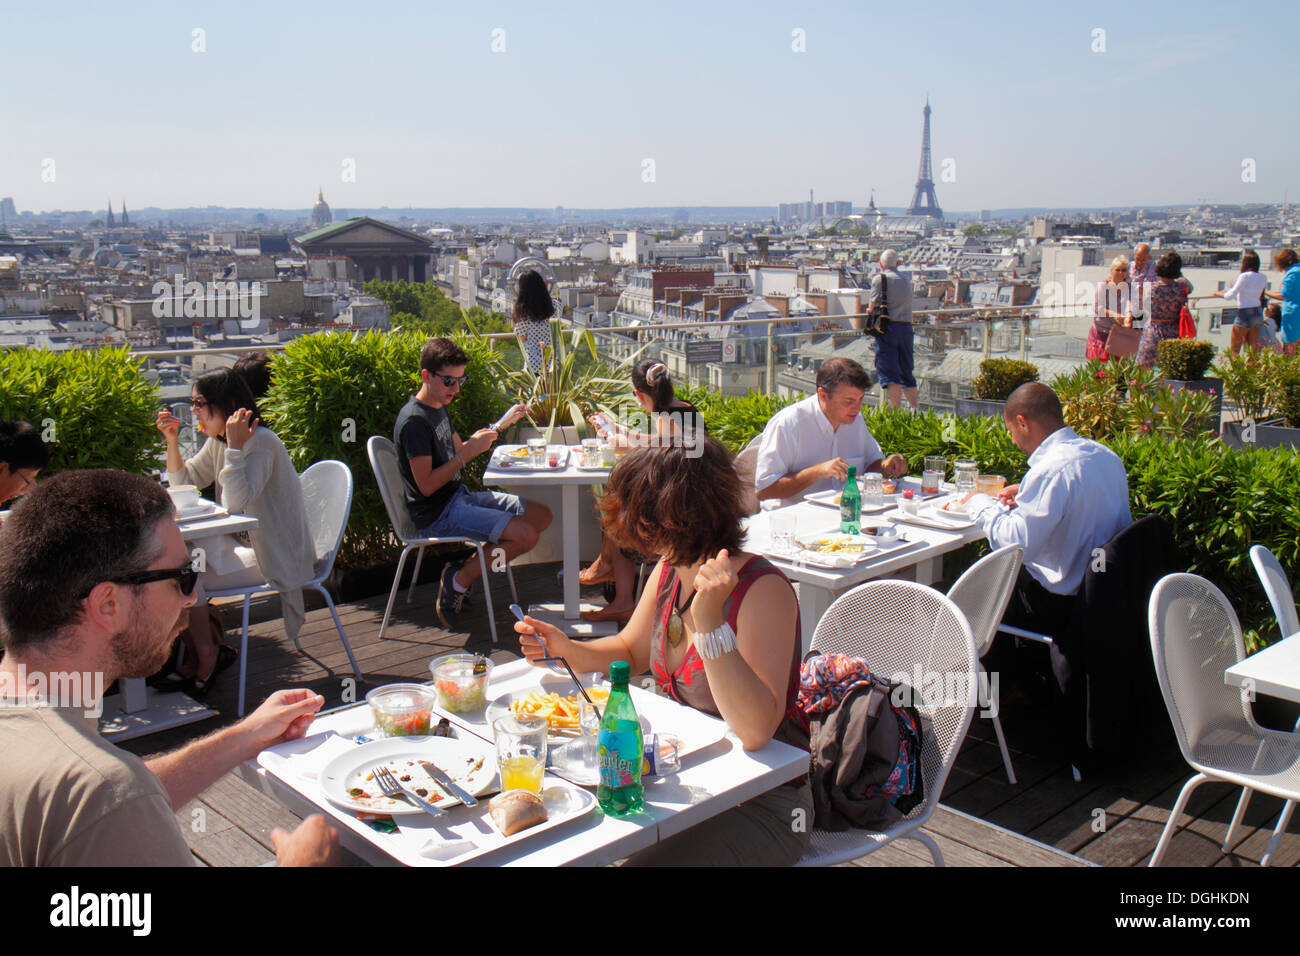 Paris France,9th arrondissement,Boulevard Haussmann,Au Printemps,department store,rooftop terrace,city skyline view,Le Déli-Cieux,restaurant restauran Stock Photo